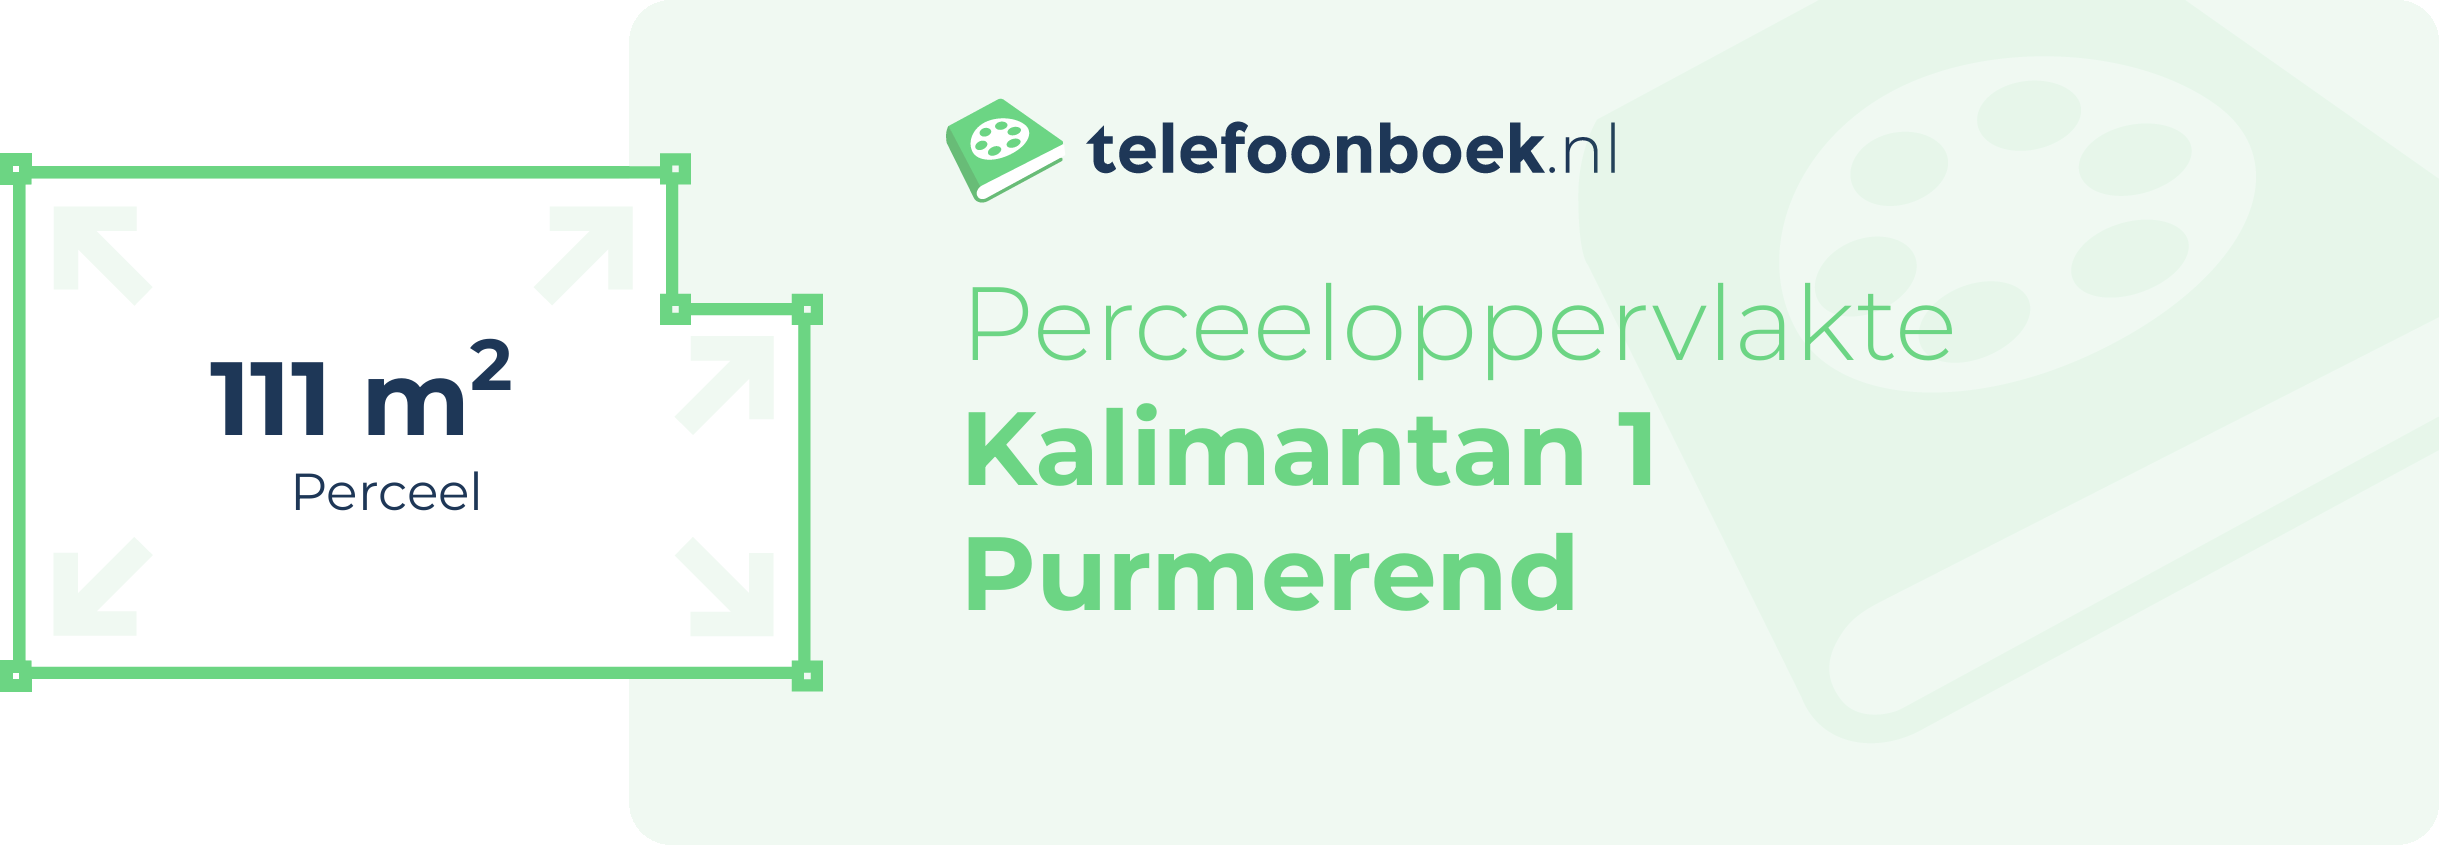 Perceeloppervlakte Kalimantan 1 Purmerend